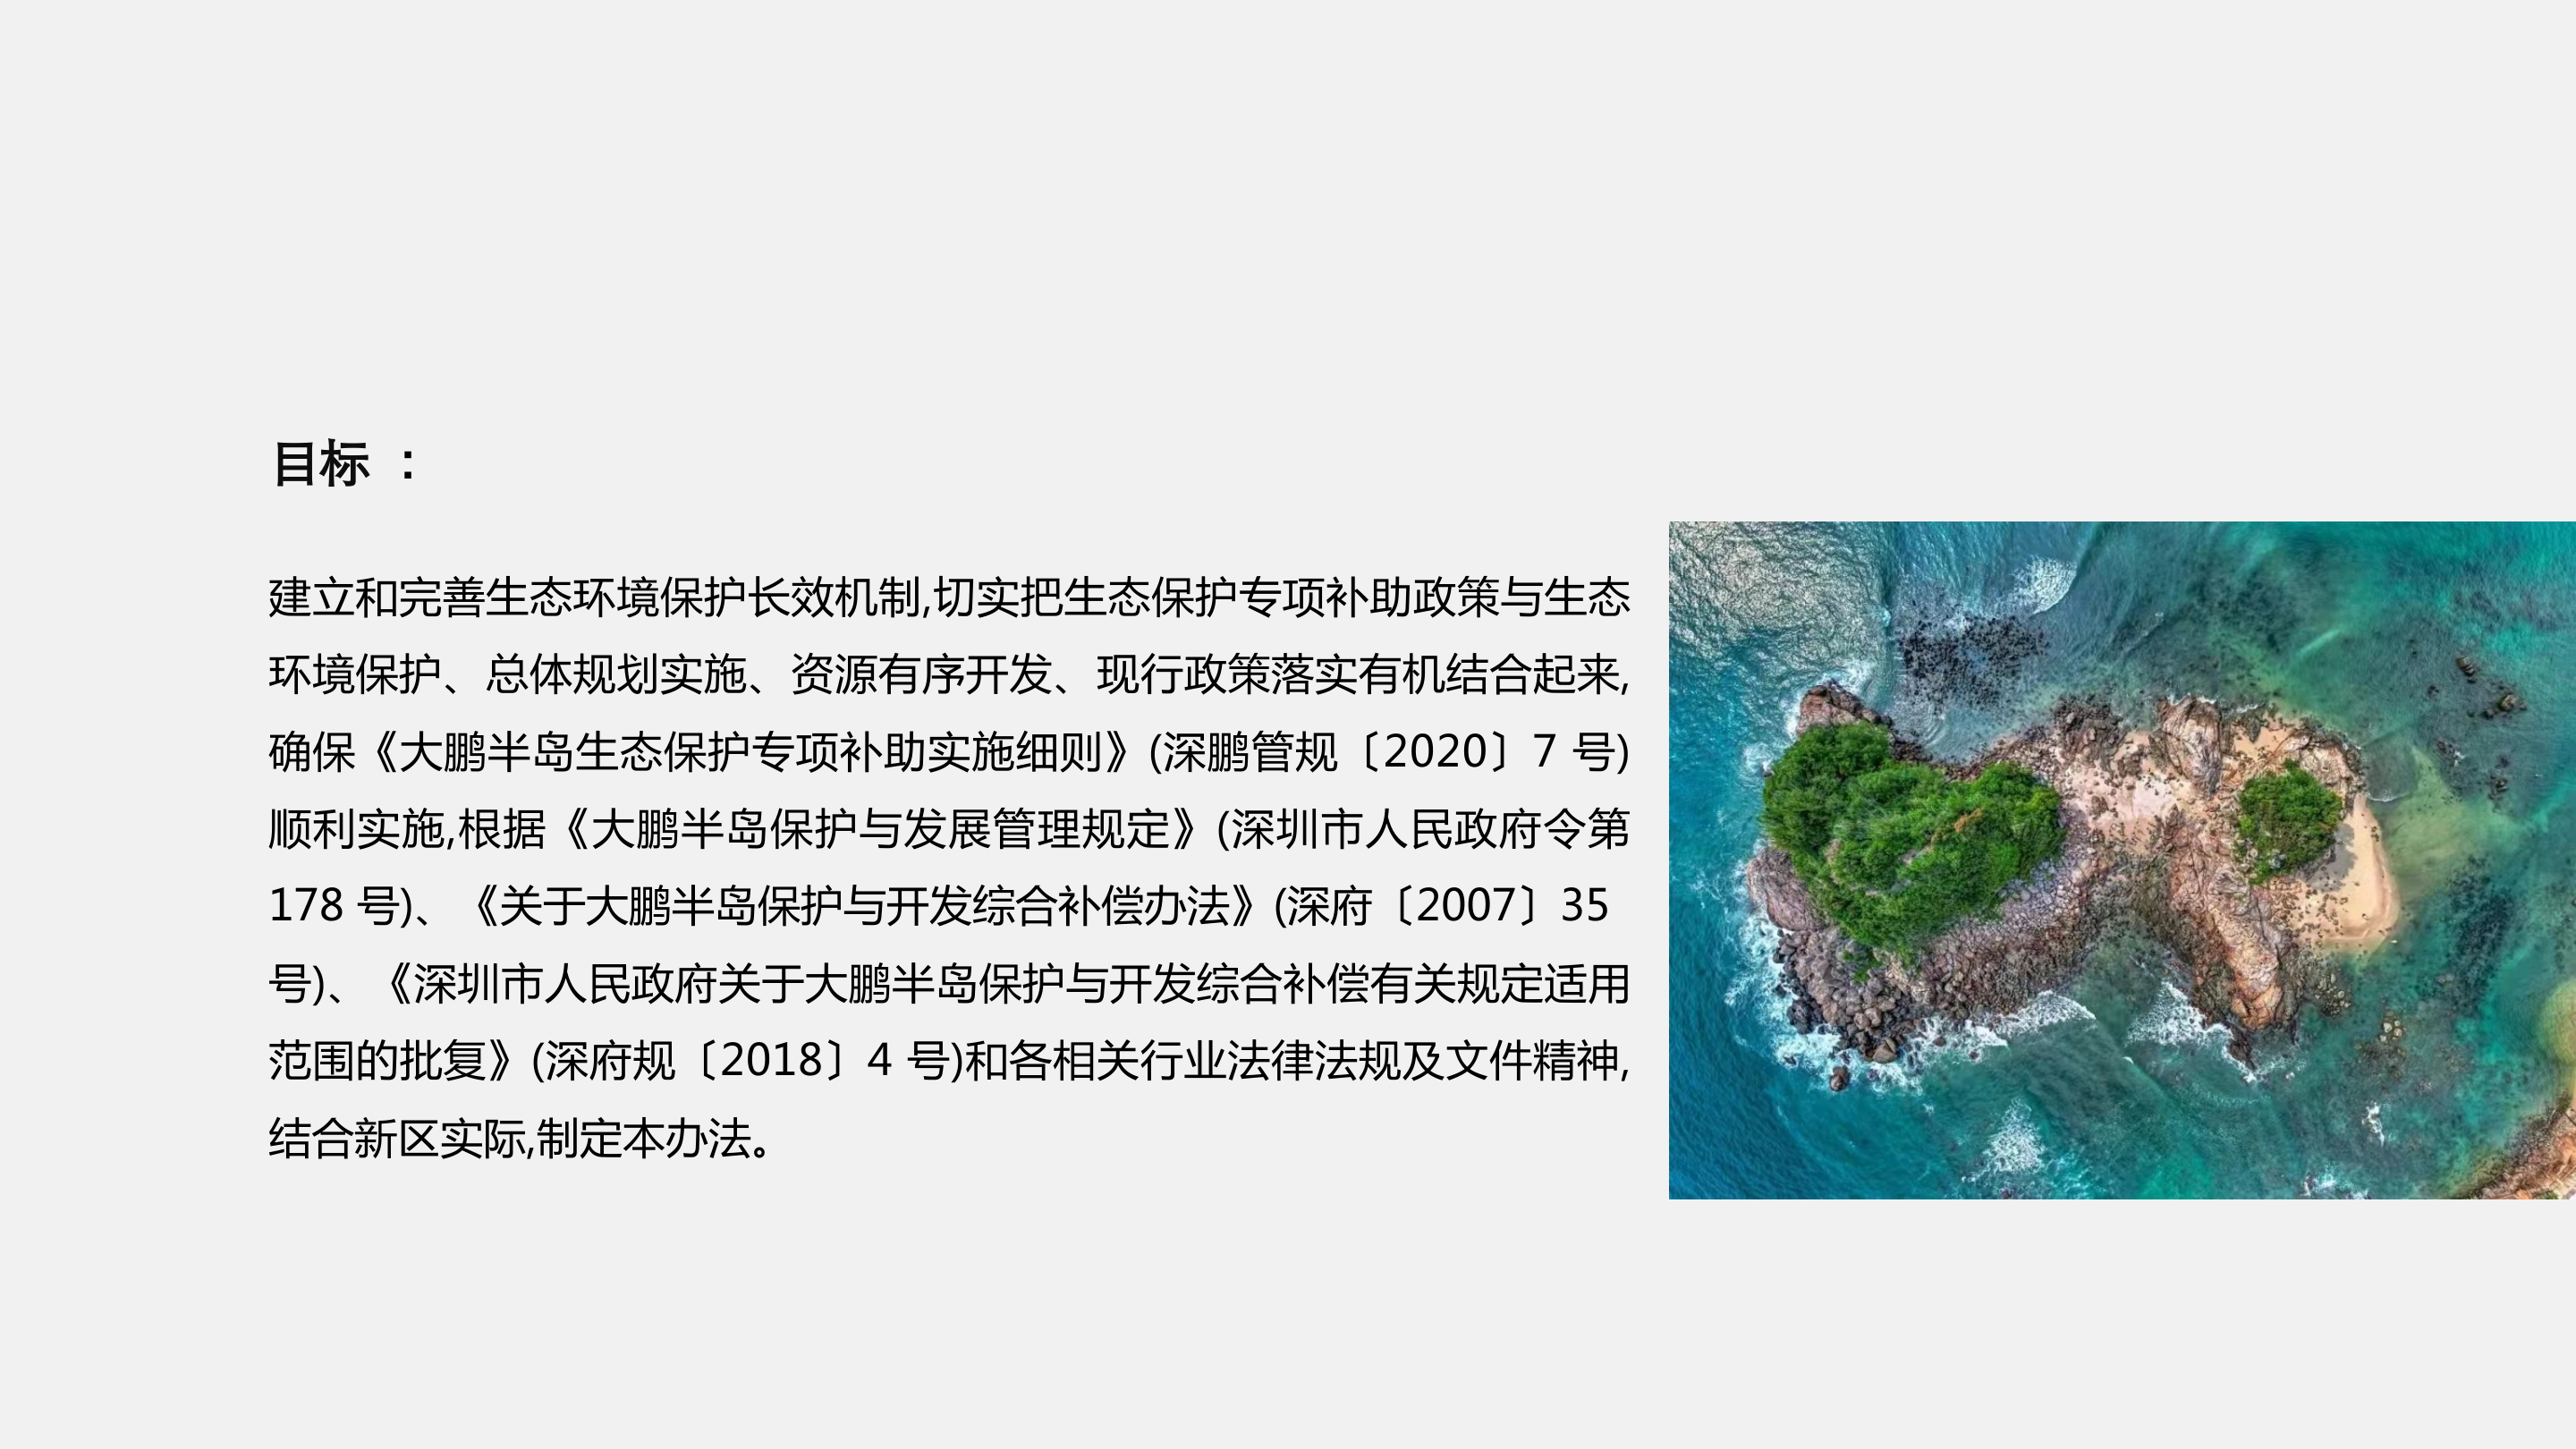 附件3：《大鹏半岛生态保护专项补助考核办法》政策解读_04.png